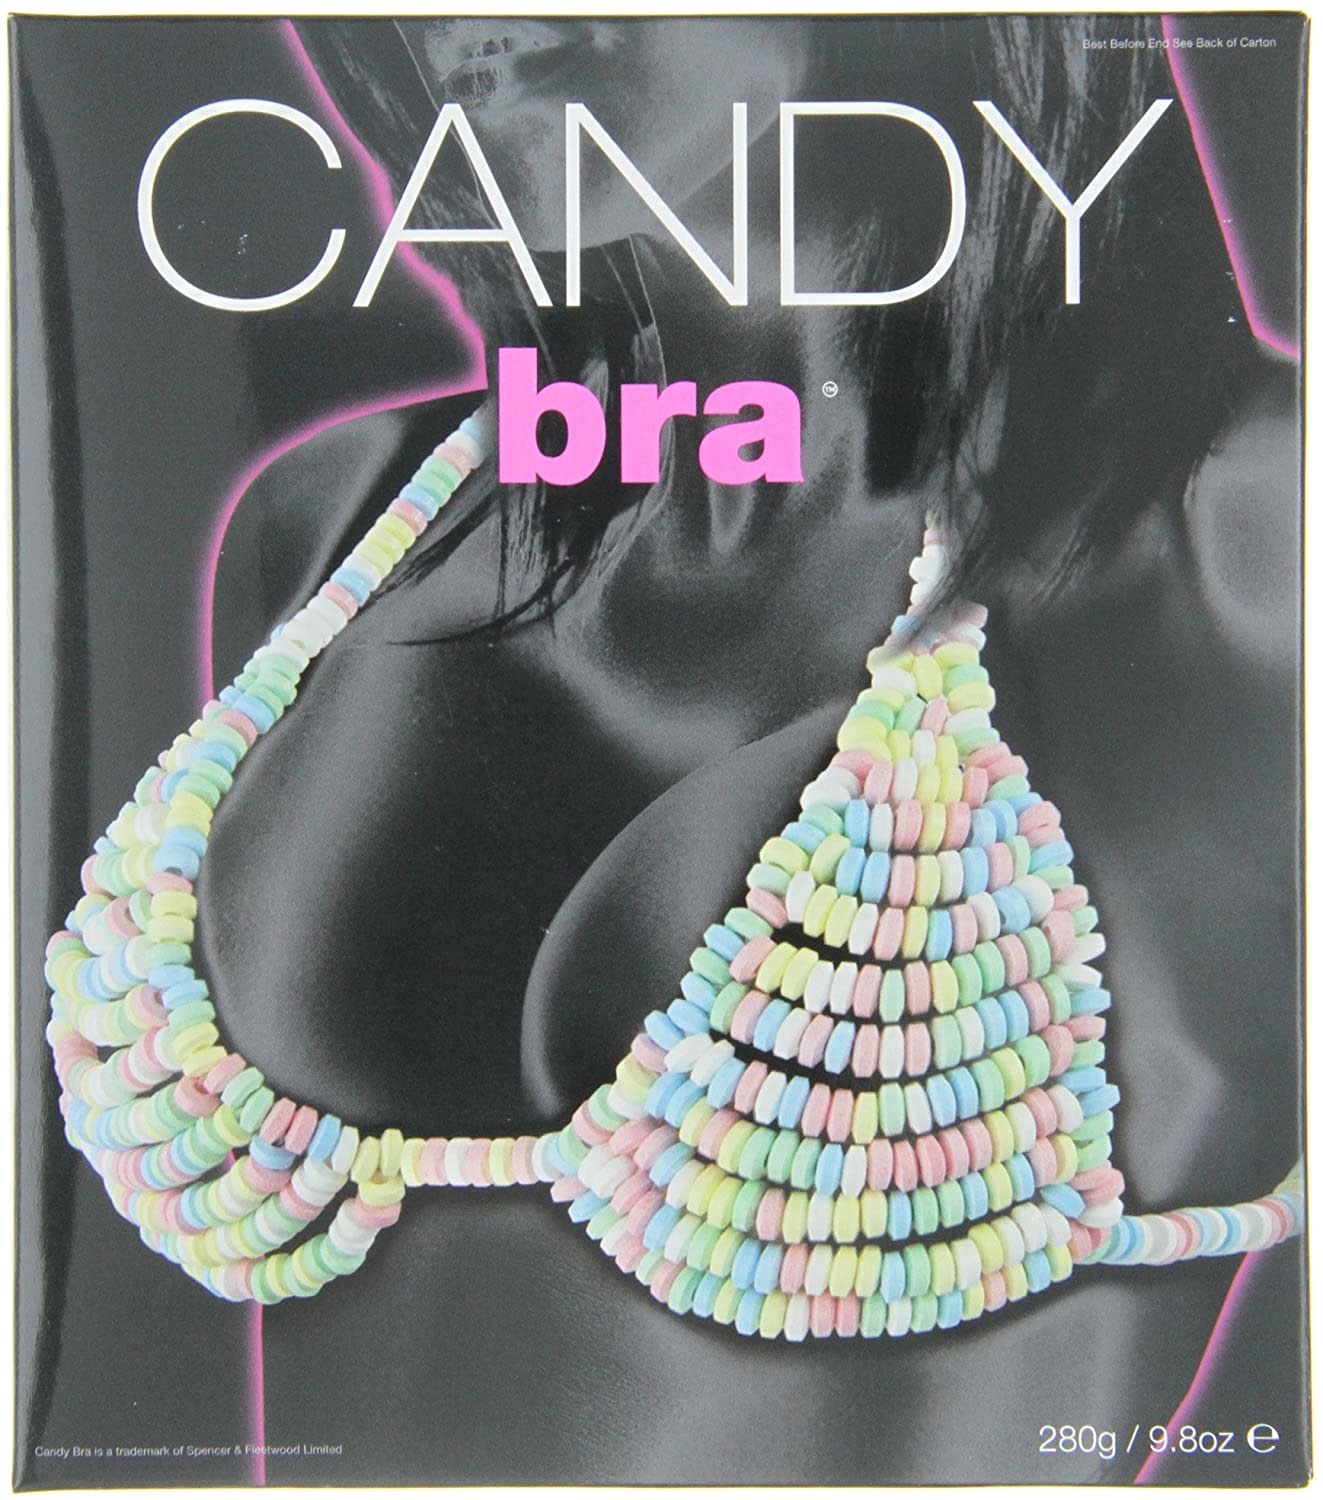 EDIBLE CANDY BRA – Condom-USA